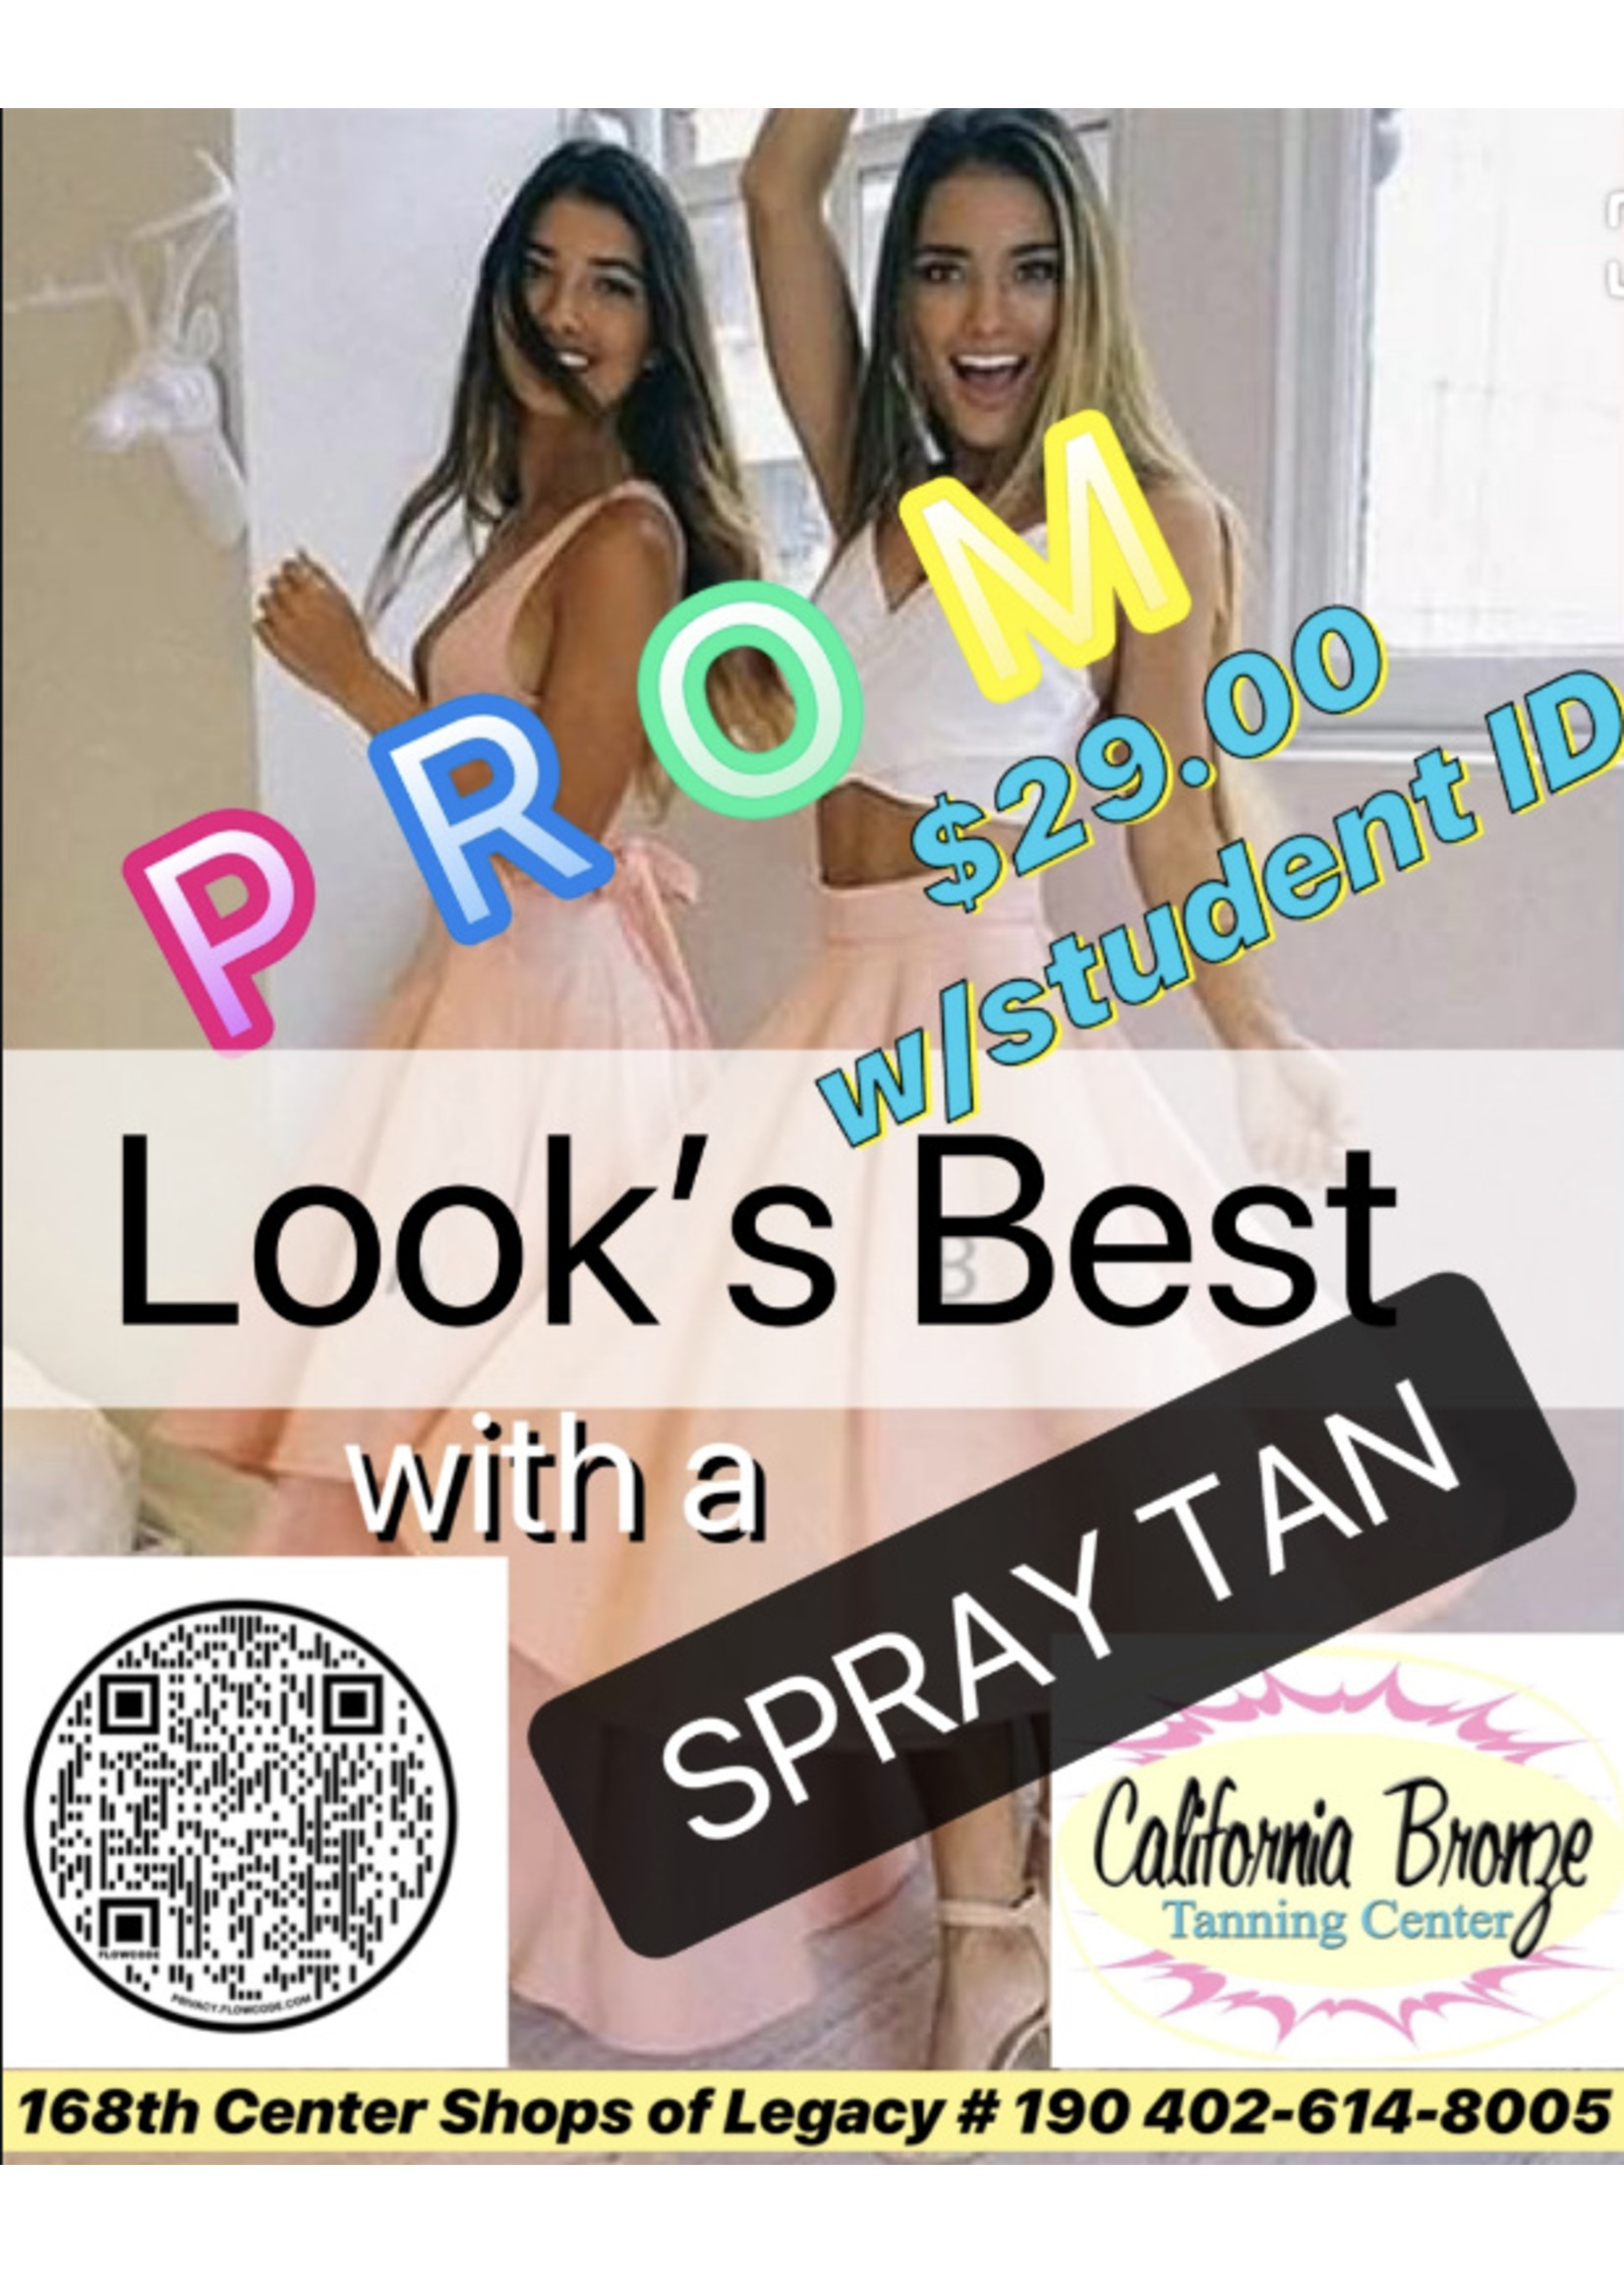 Prom Spray Tan $29.95 Student ID